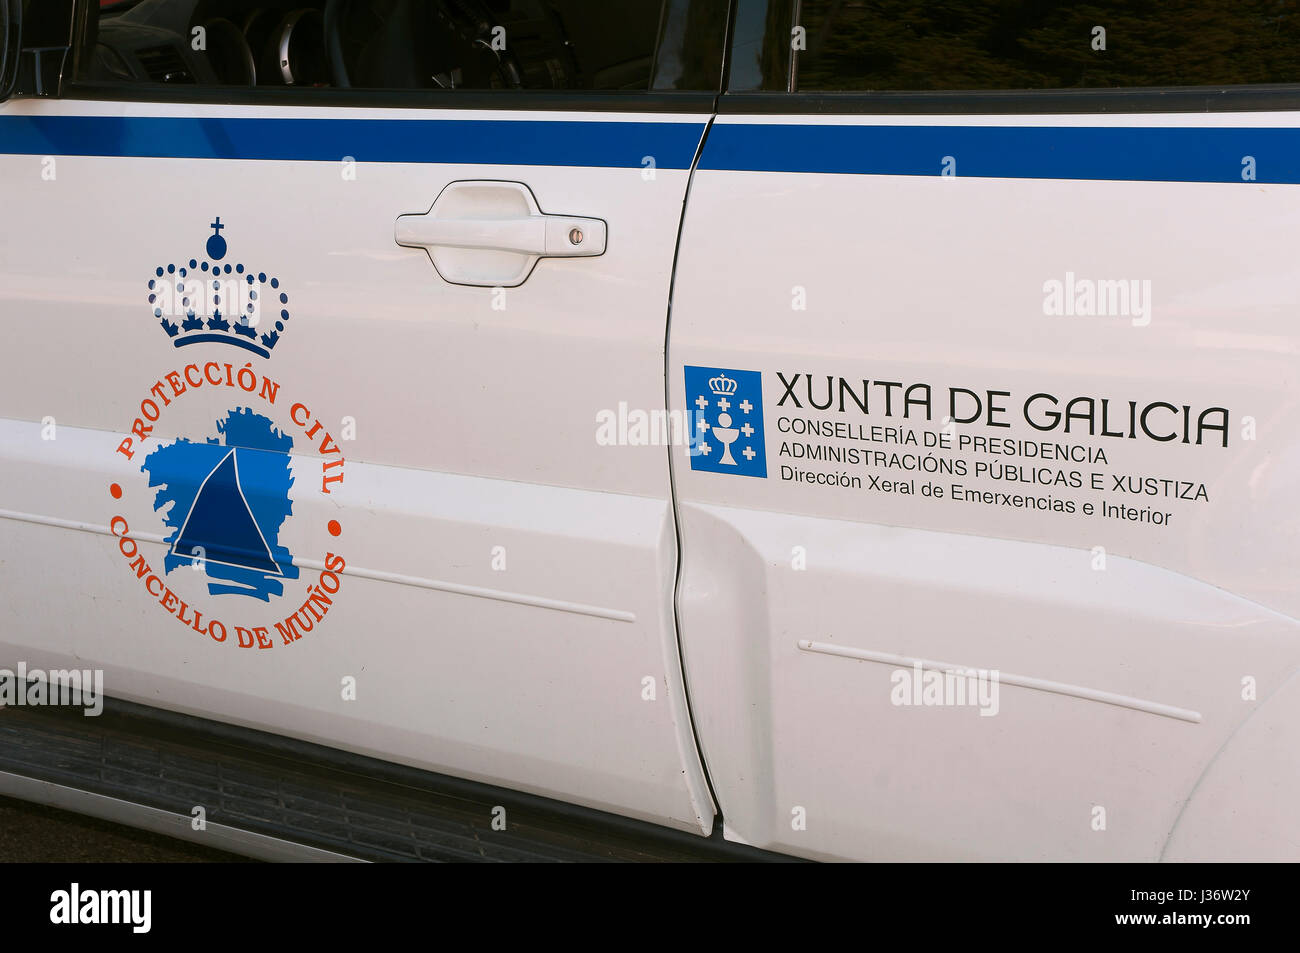 Fahrzeug für den Katastrophenschutz Service, Mugueimes-Muinos, Orense Provinz, Region Galicien, Spanien, Europa Stockfoto